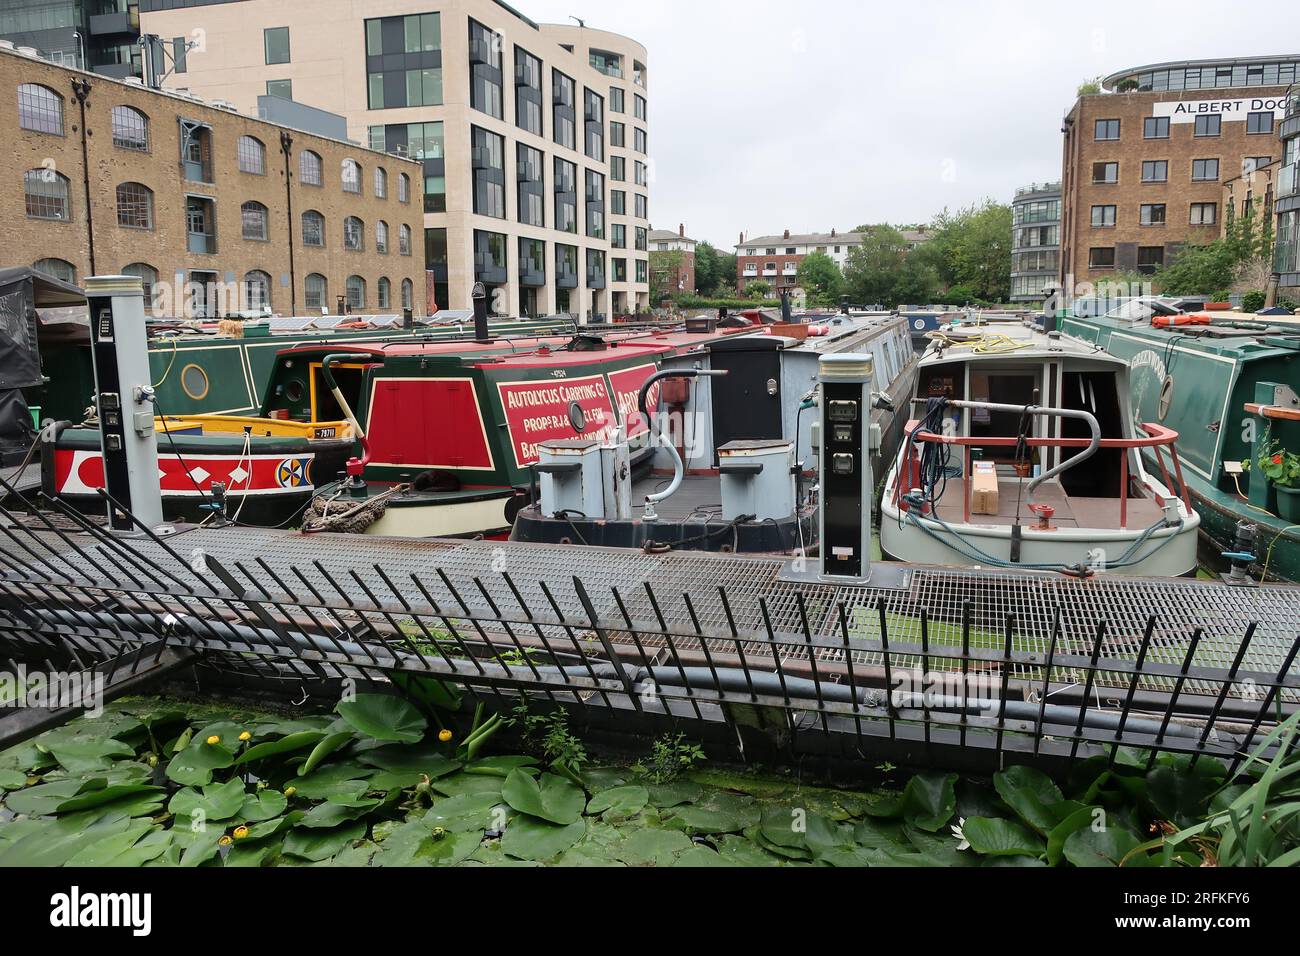 La vie sur l'eau : bateaux étroits amarrés à Battlebridge Basin sur le Regent's Canal à côté des appartements londoniens et de l'ancien Albert Dock. Banque D'Images